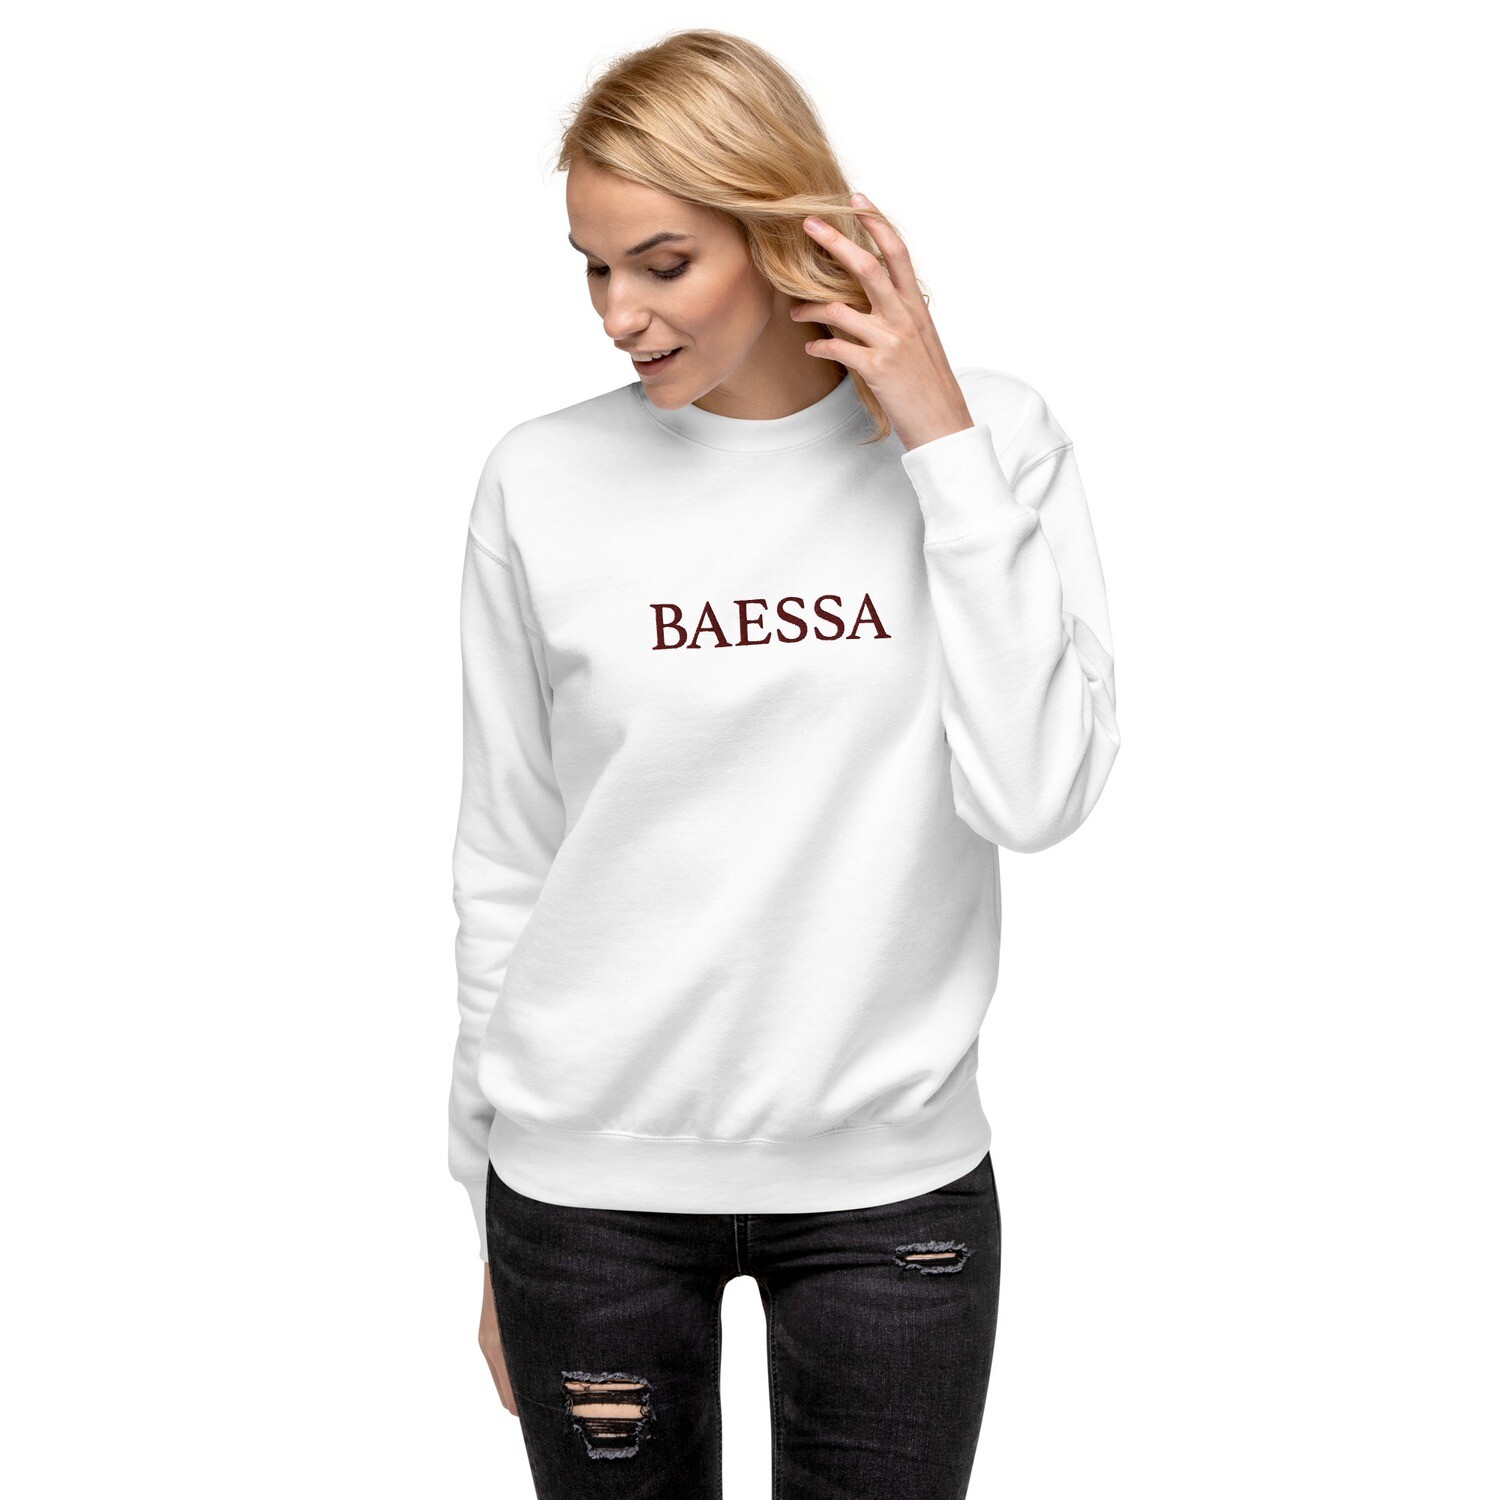 Unisex Premium Sweatshirt BAESSA